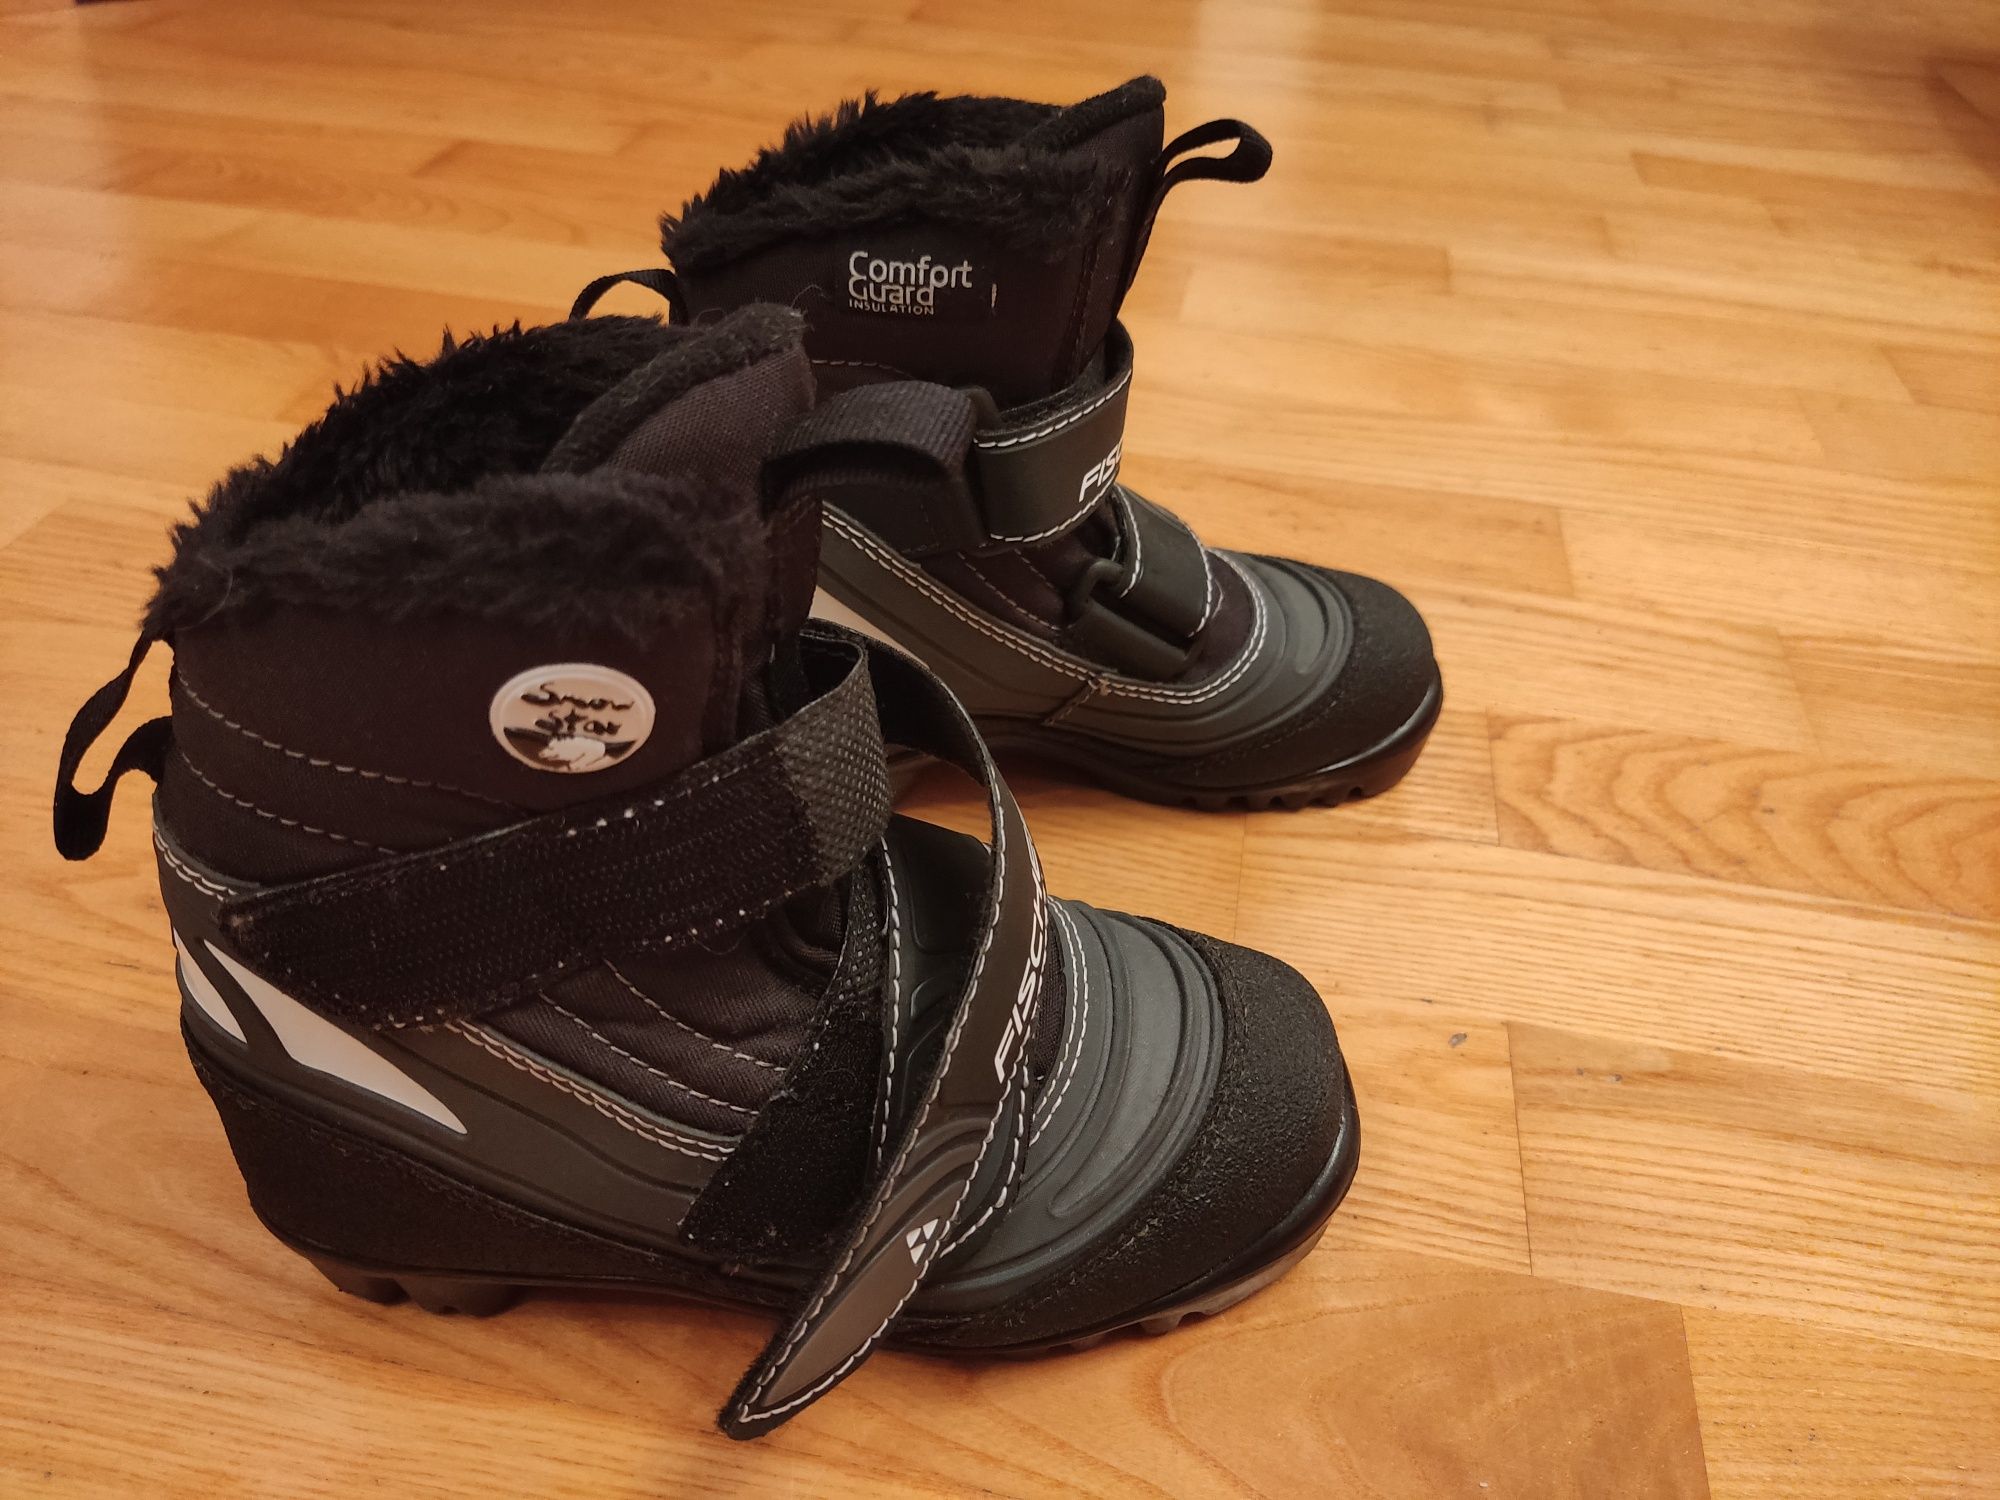 Buty narciarskie biegowe Fischer Snow Star EU 30 wkładka 20,5cm